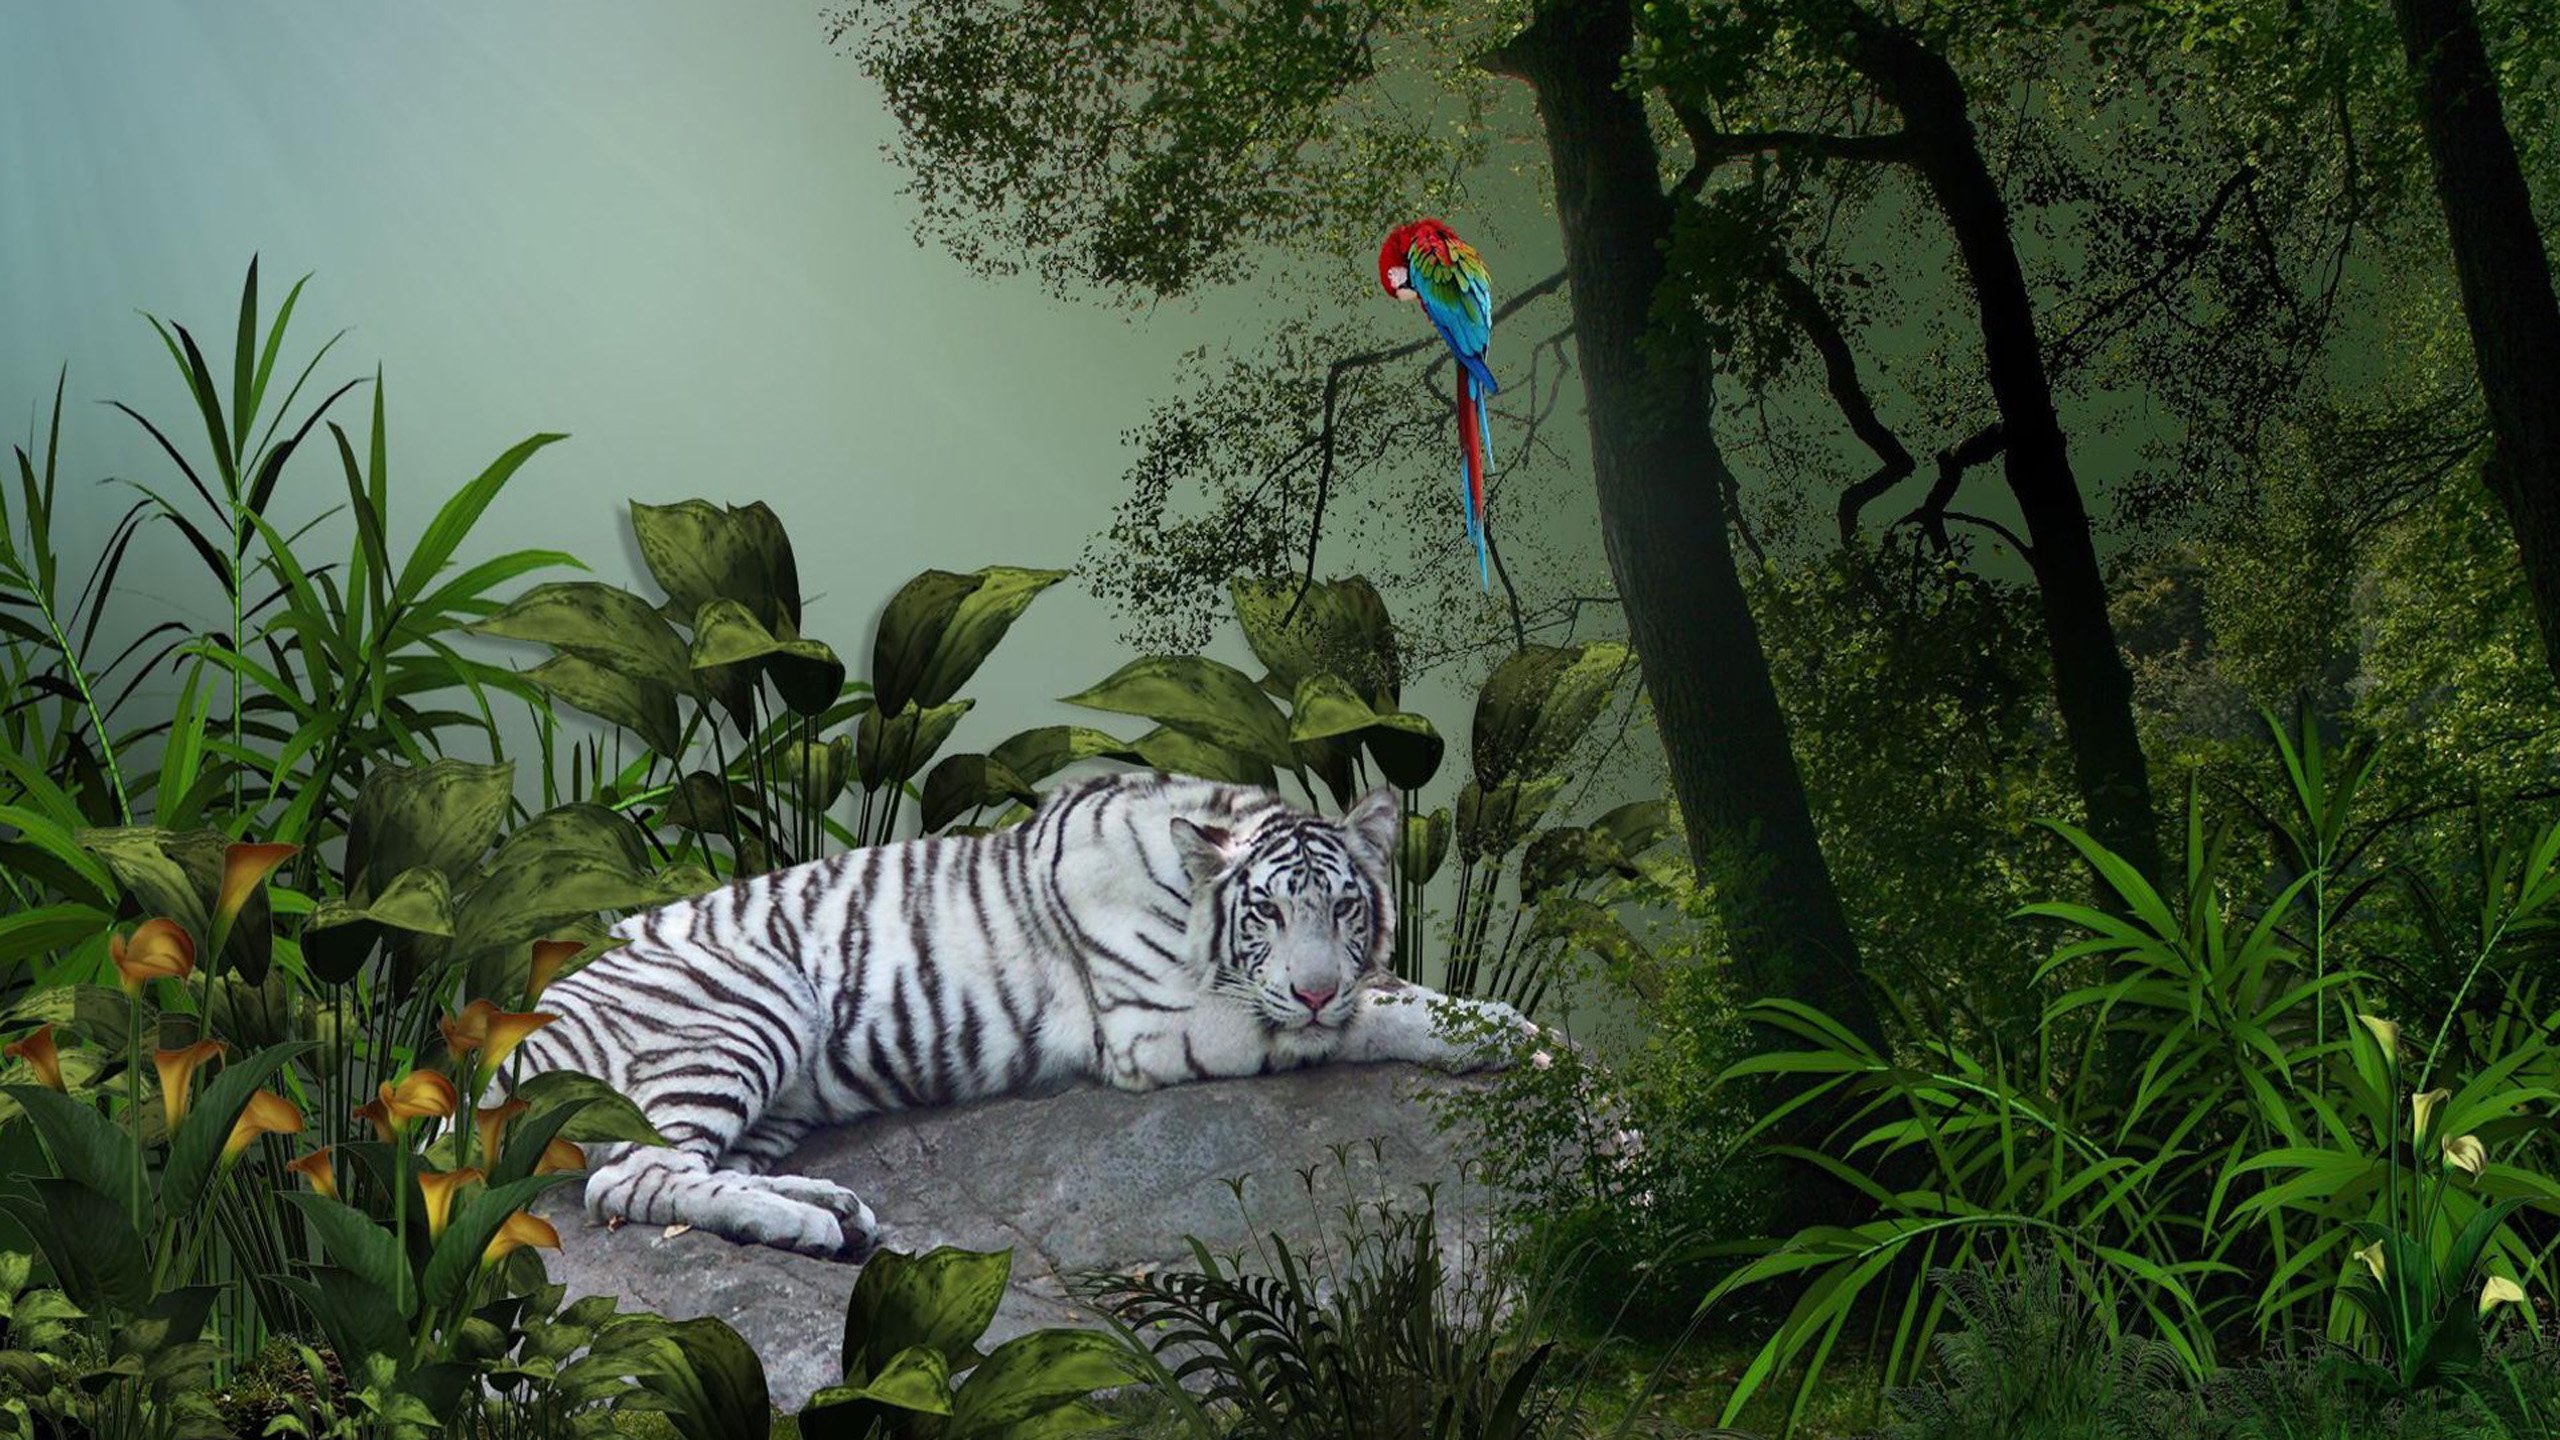 Jungle tiger. Обои джунгли. Животные джунглей. Тигр в джунглях. Фотообои с животными.